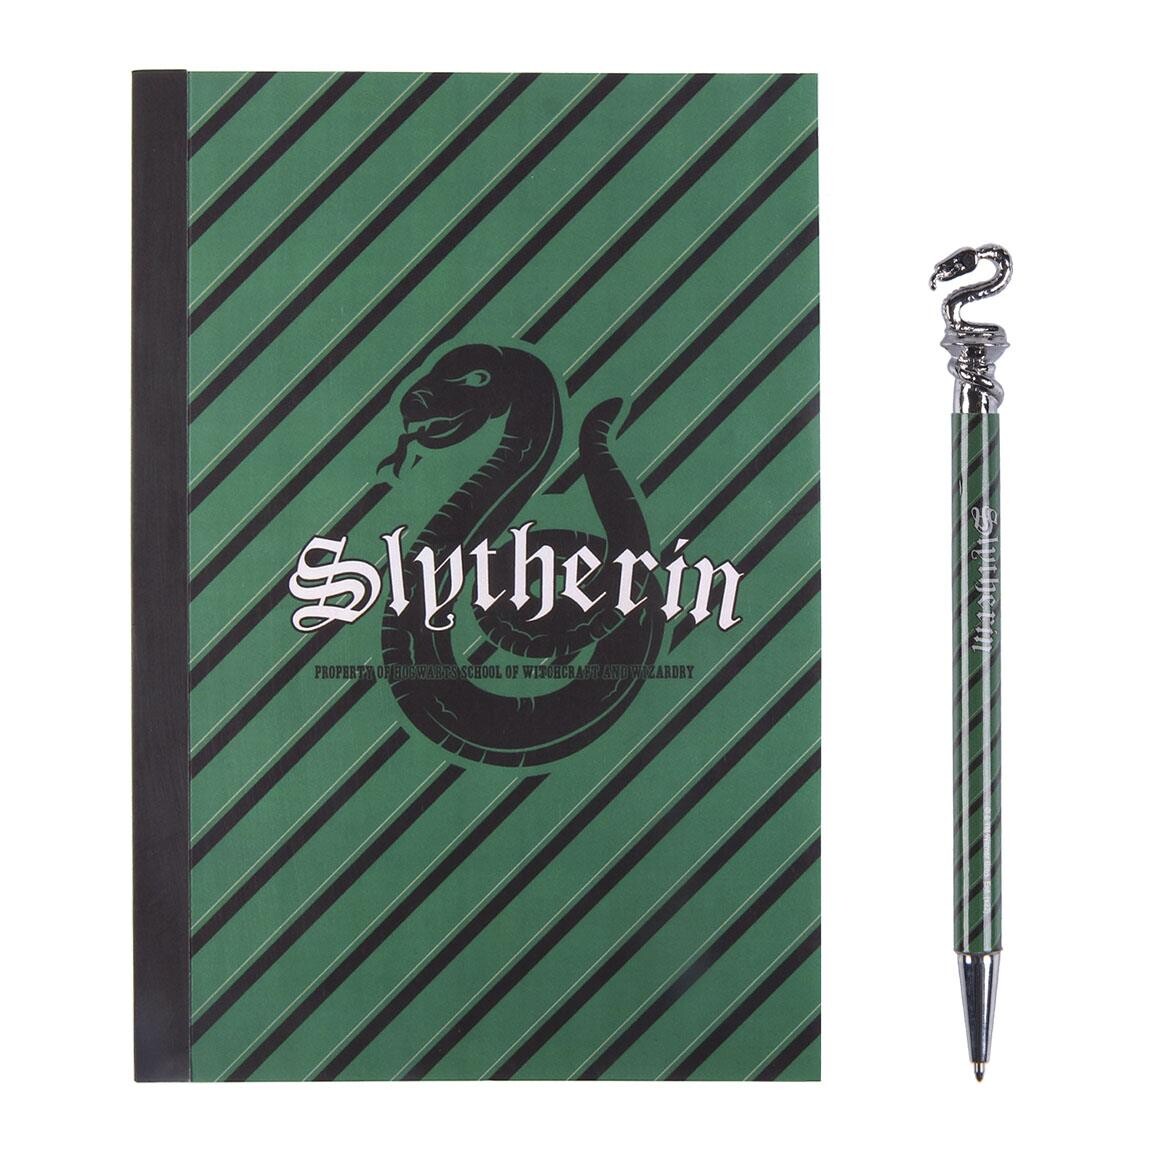 Slytherin (Harry Potter) pens